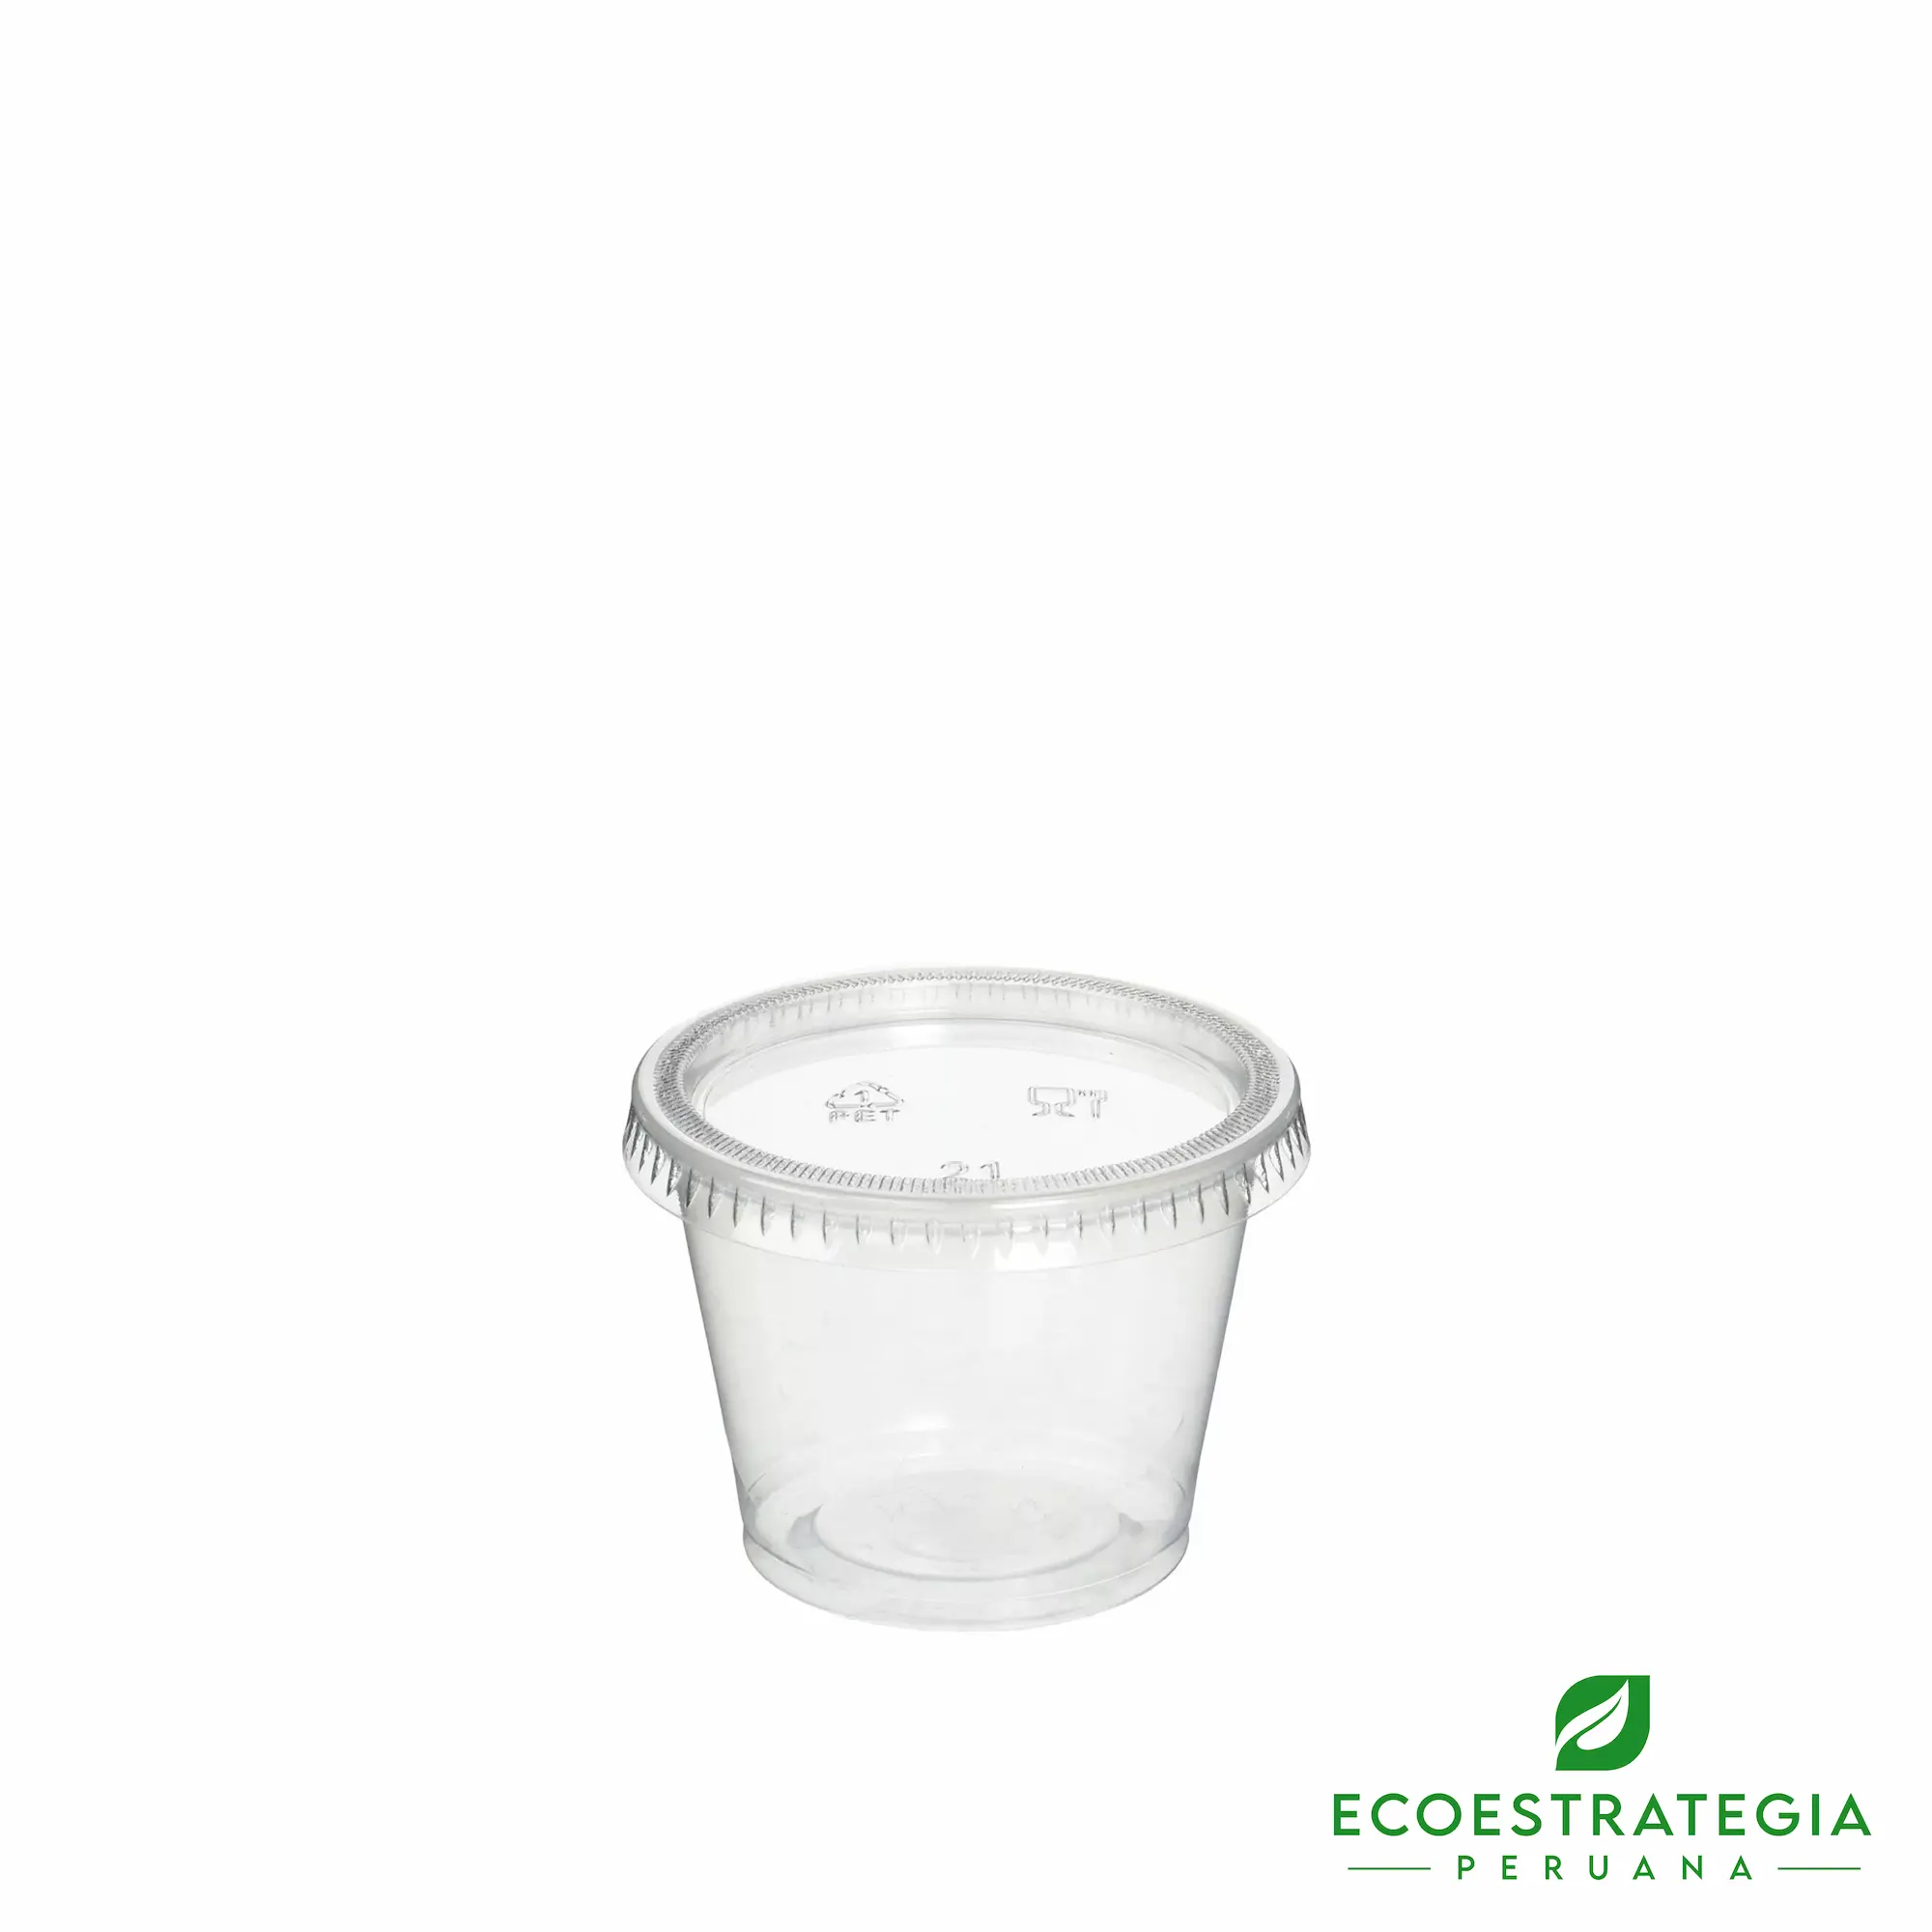 Este salsero de 4 oz es un producto de materiales descartables, hecho a base de pet virgen. Cotiza envases, empaques y pirotines biodegradables para comidas